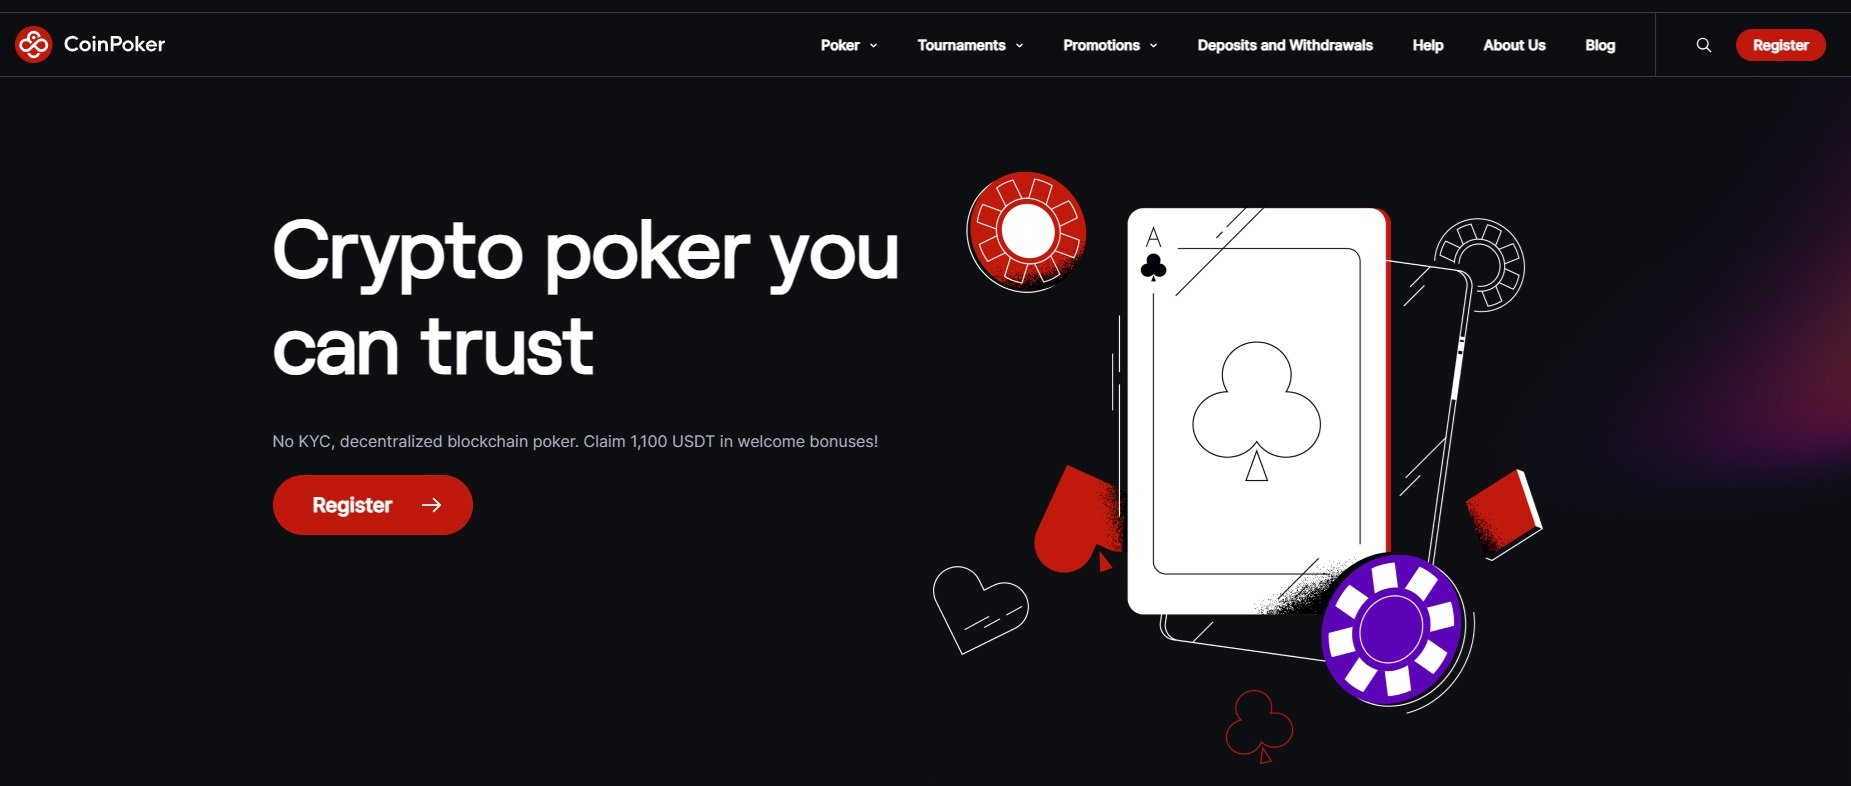 CoinPoker je největší a nejlepší krypto pokerová platforma. 